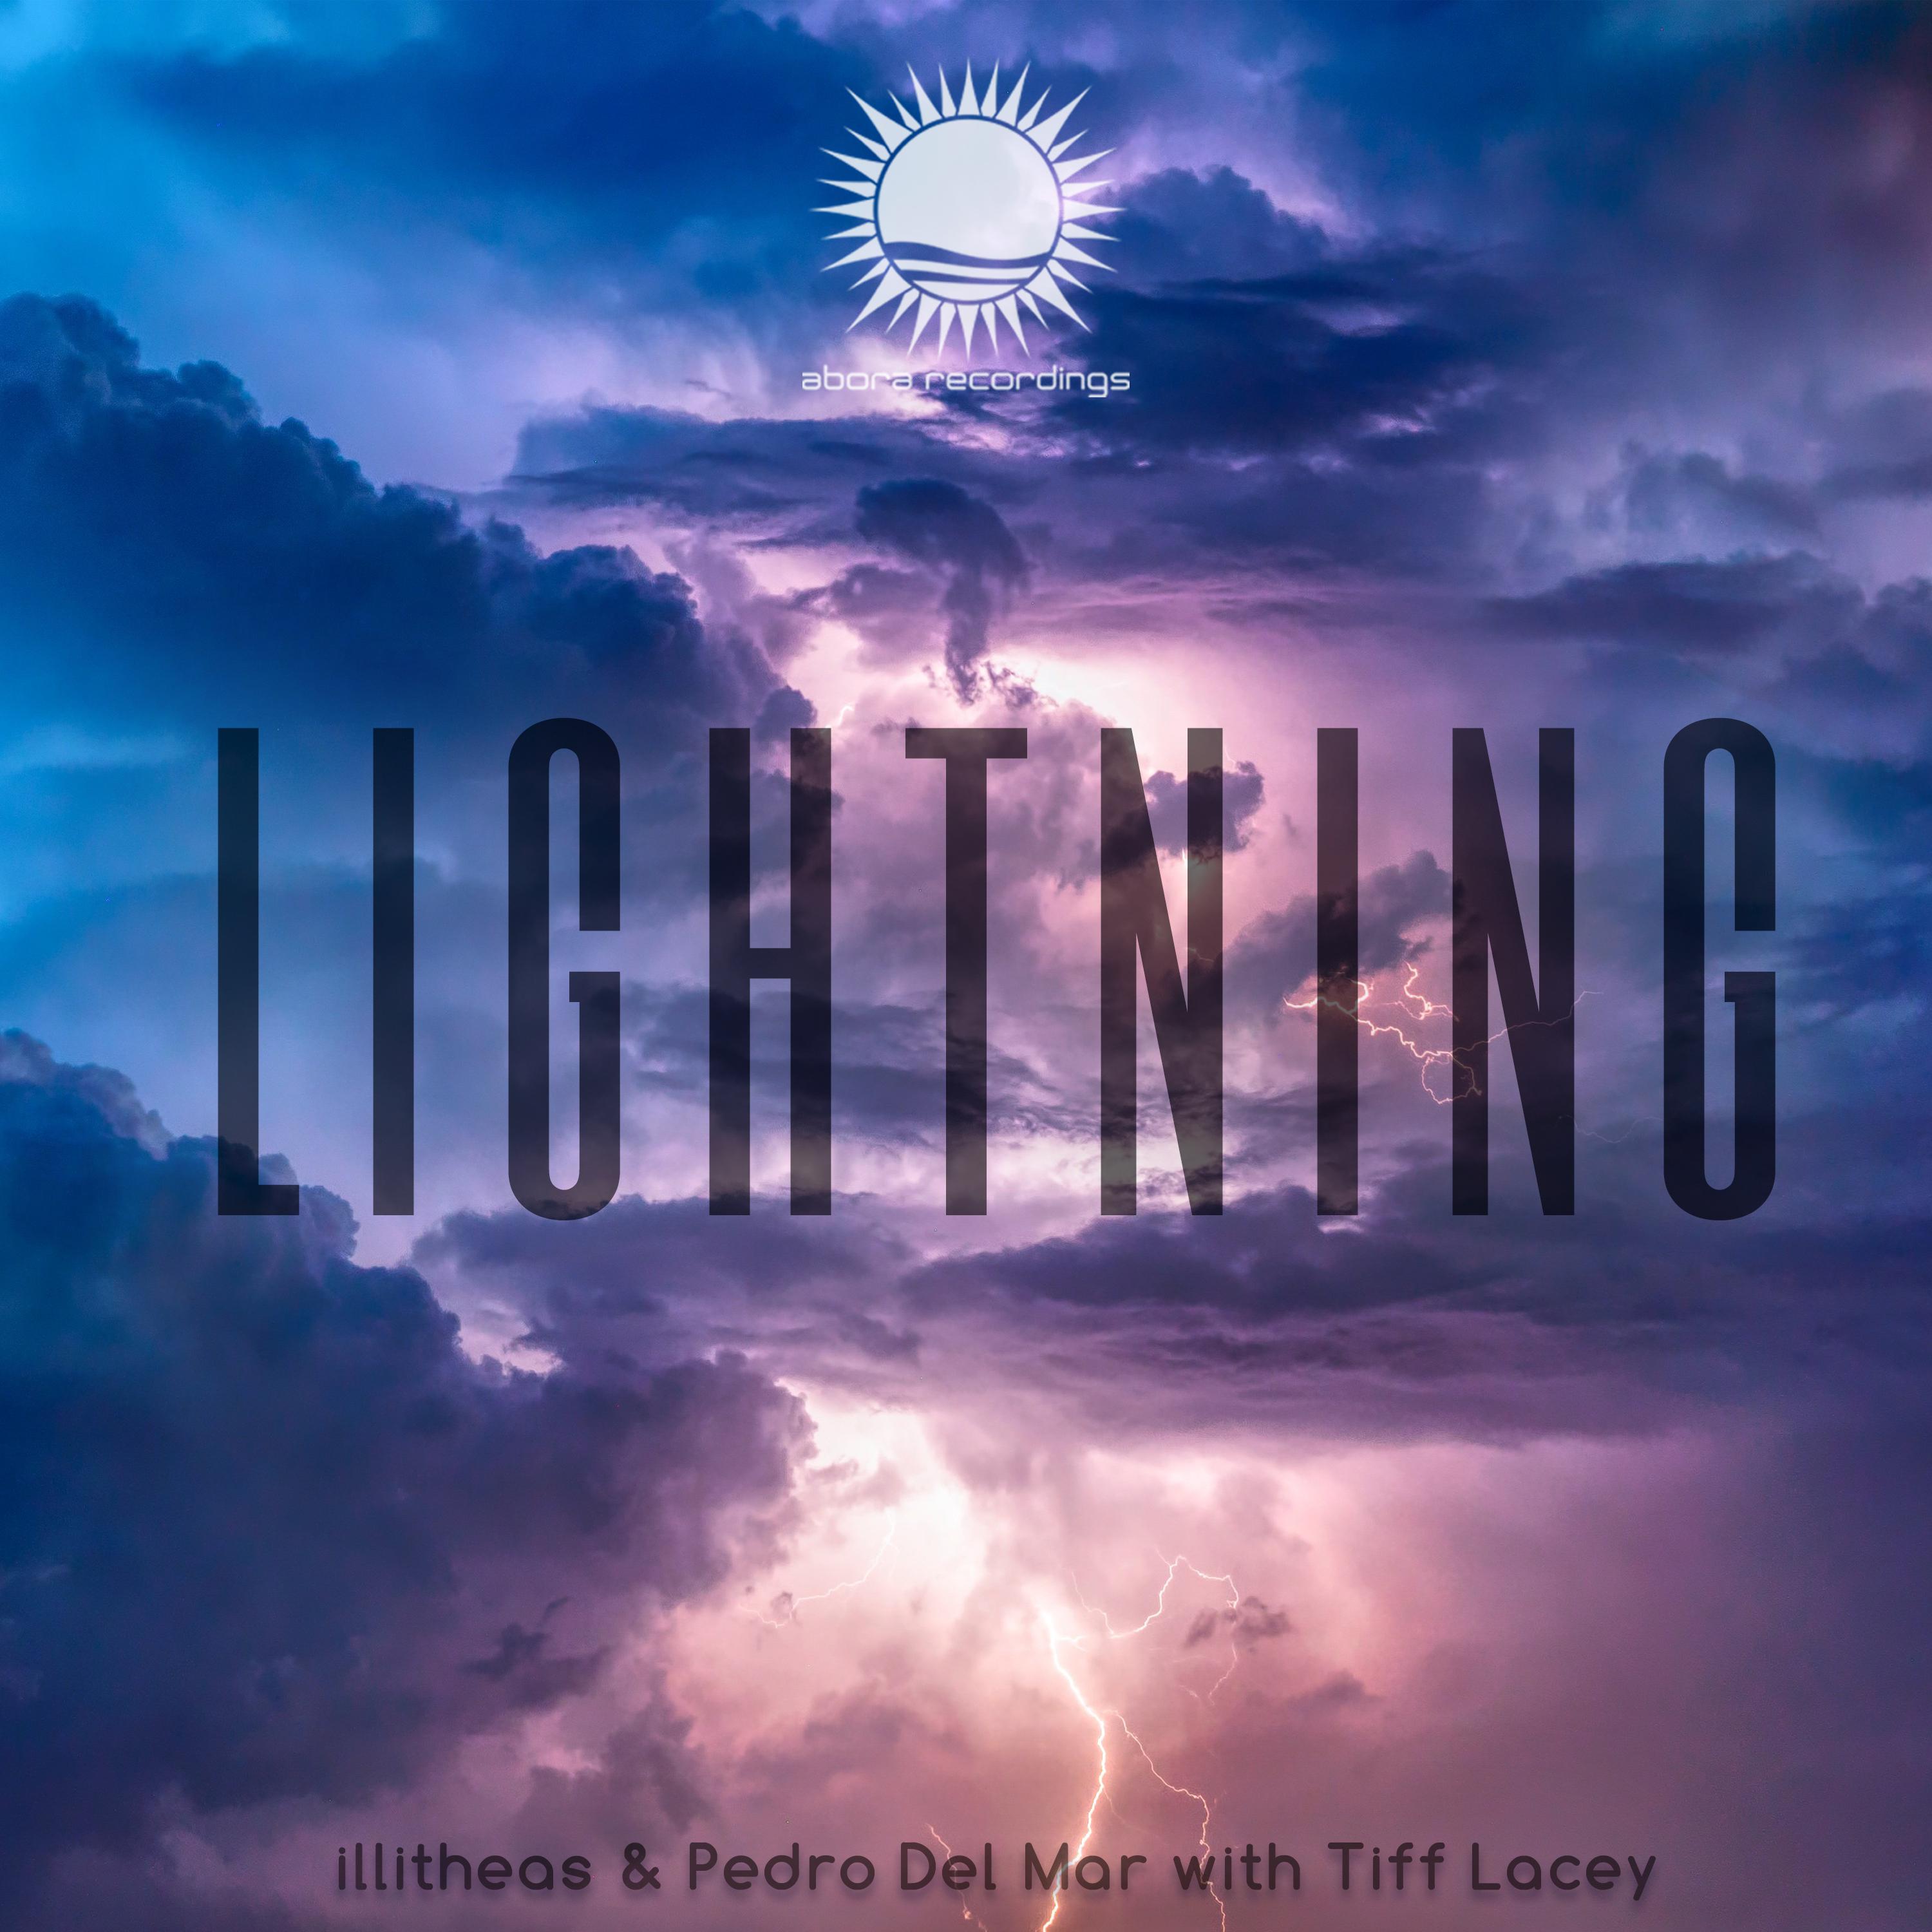 Illitheas - Lightning (Dub Mix)